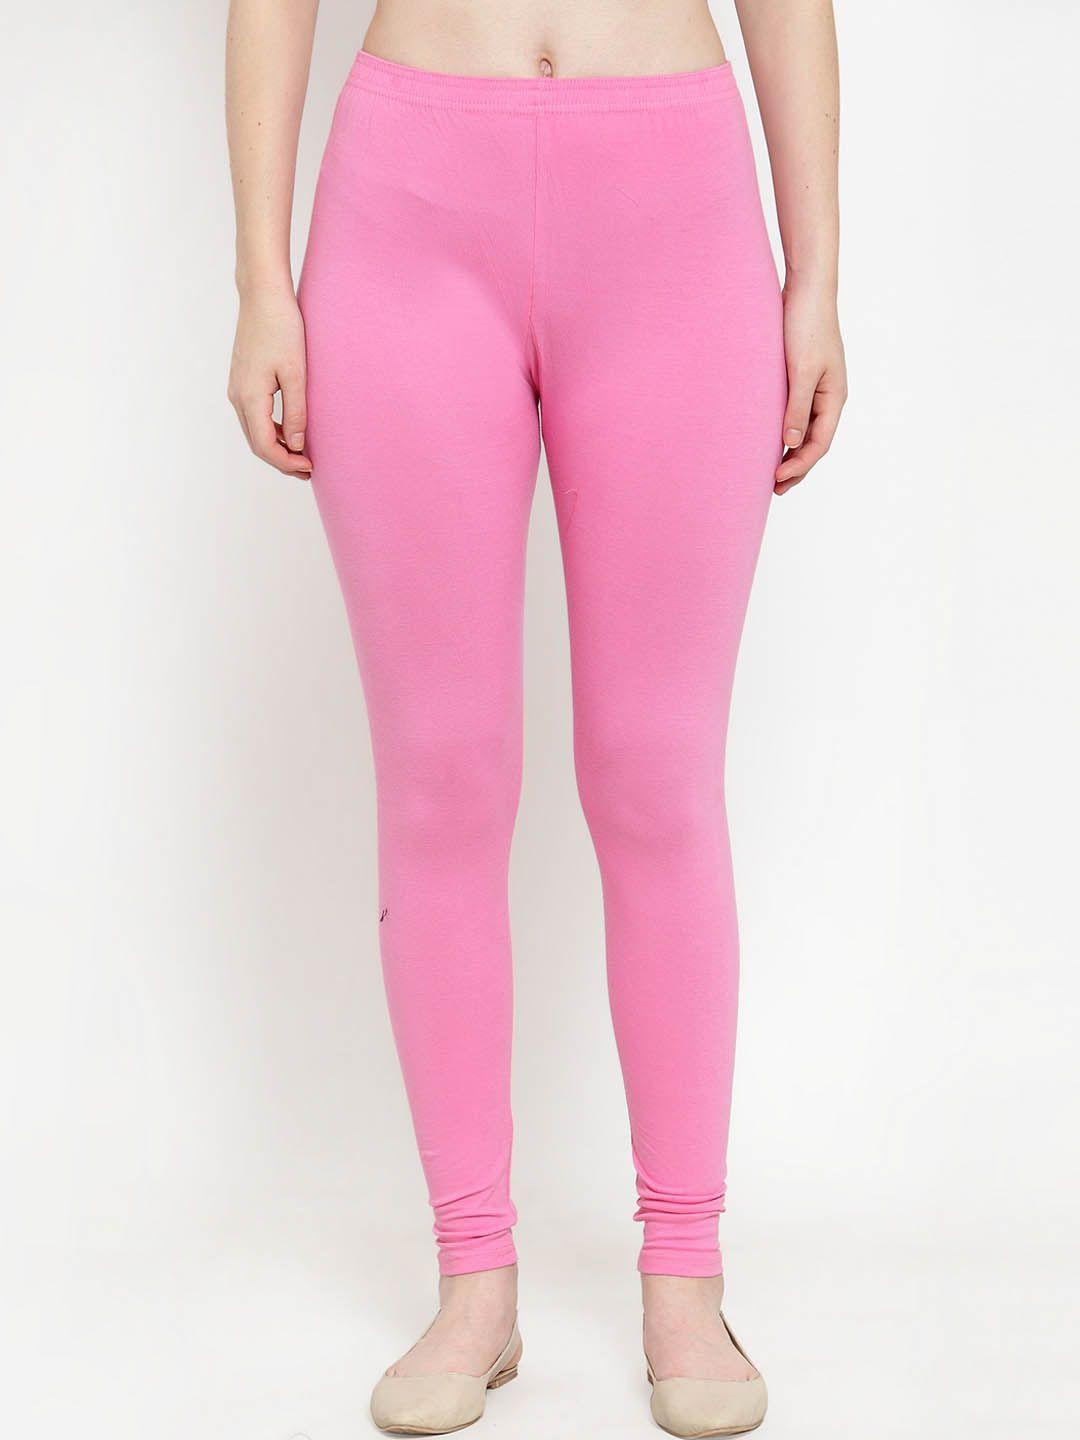 gracit women pink solid churidar-length leggings